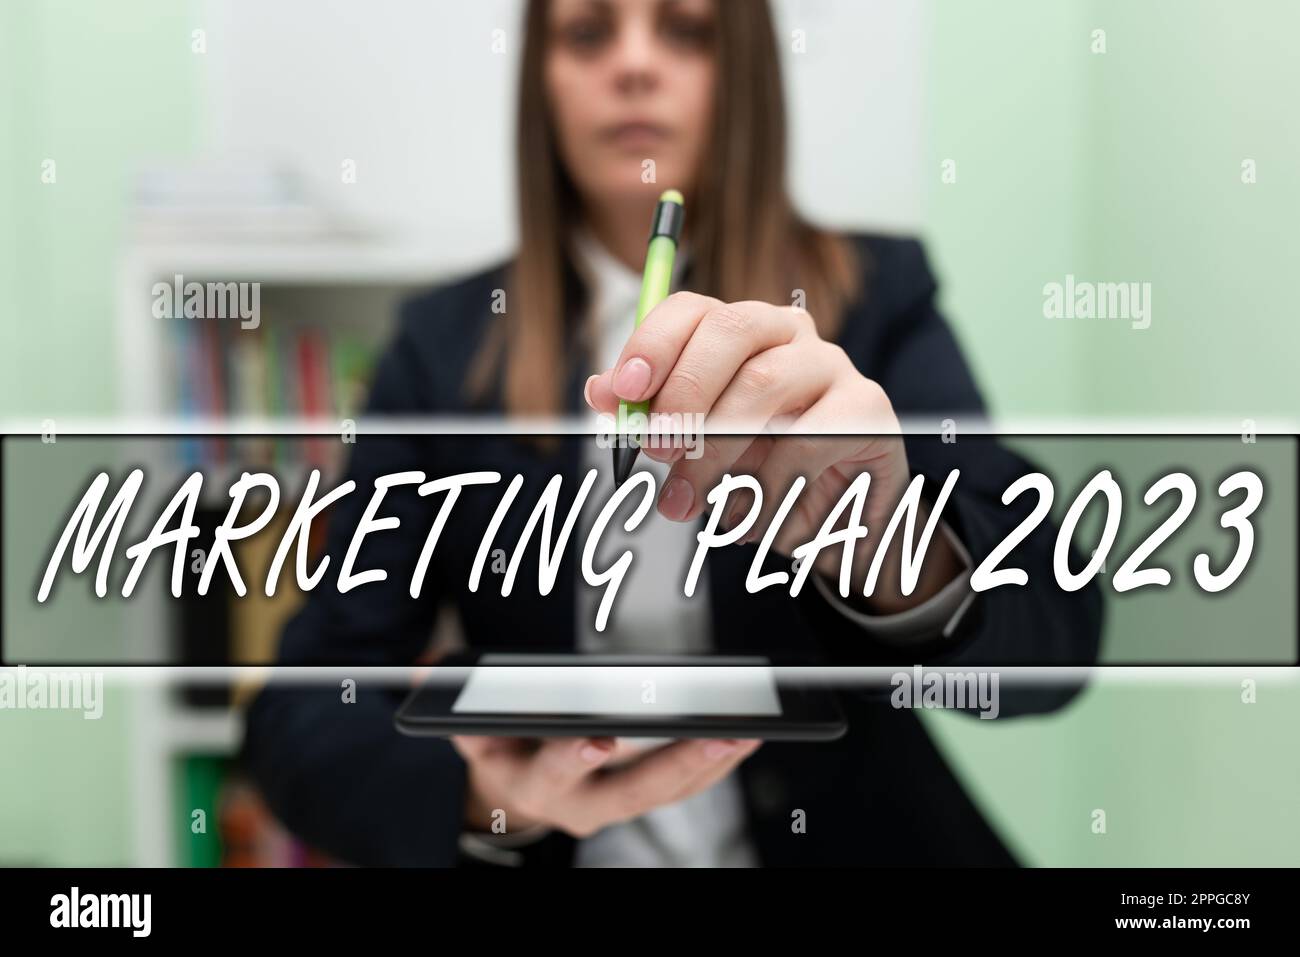 Inspiration montrant le plan de marketing d'enseigne 2023. Calendrier des concepts commerciaux définissant la manière de vendre la marque l'année prochaine Banque D'Images